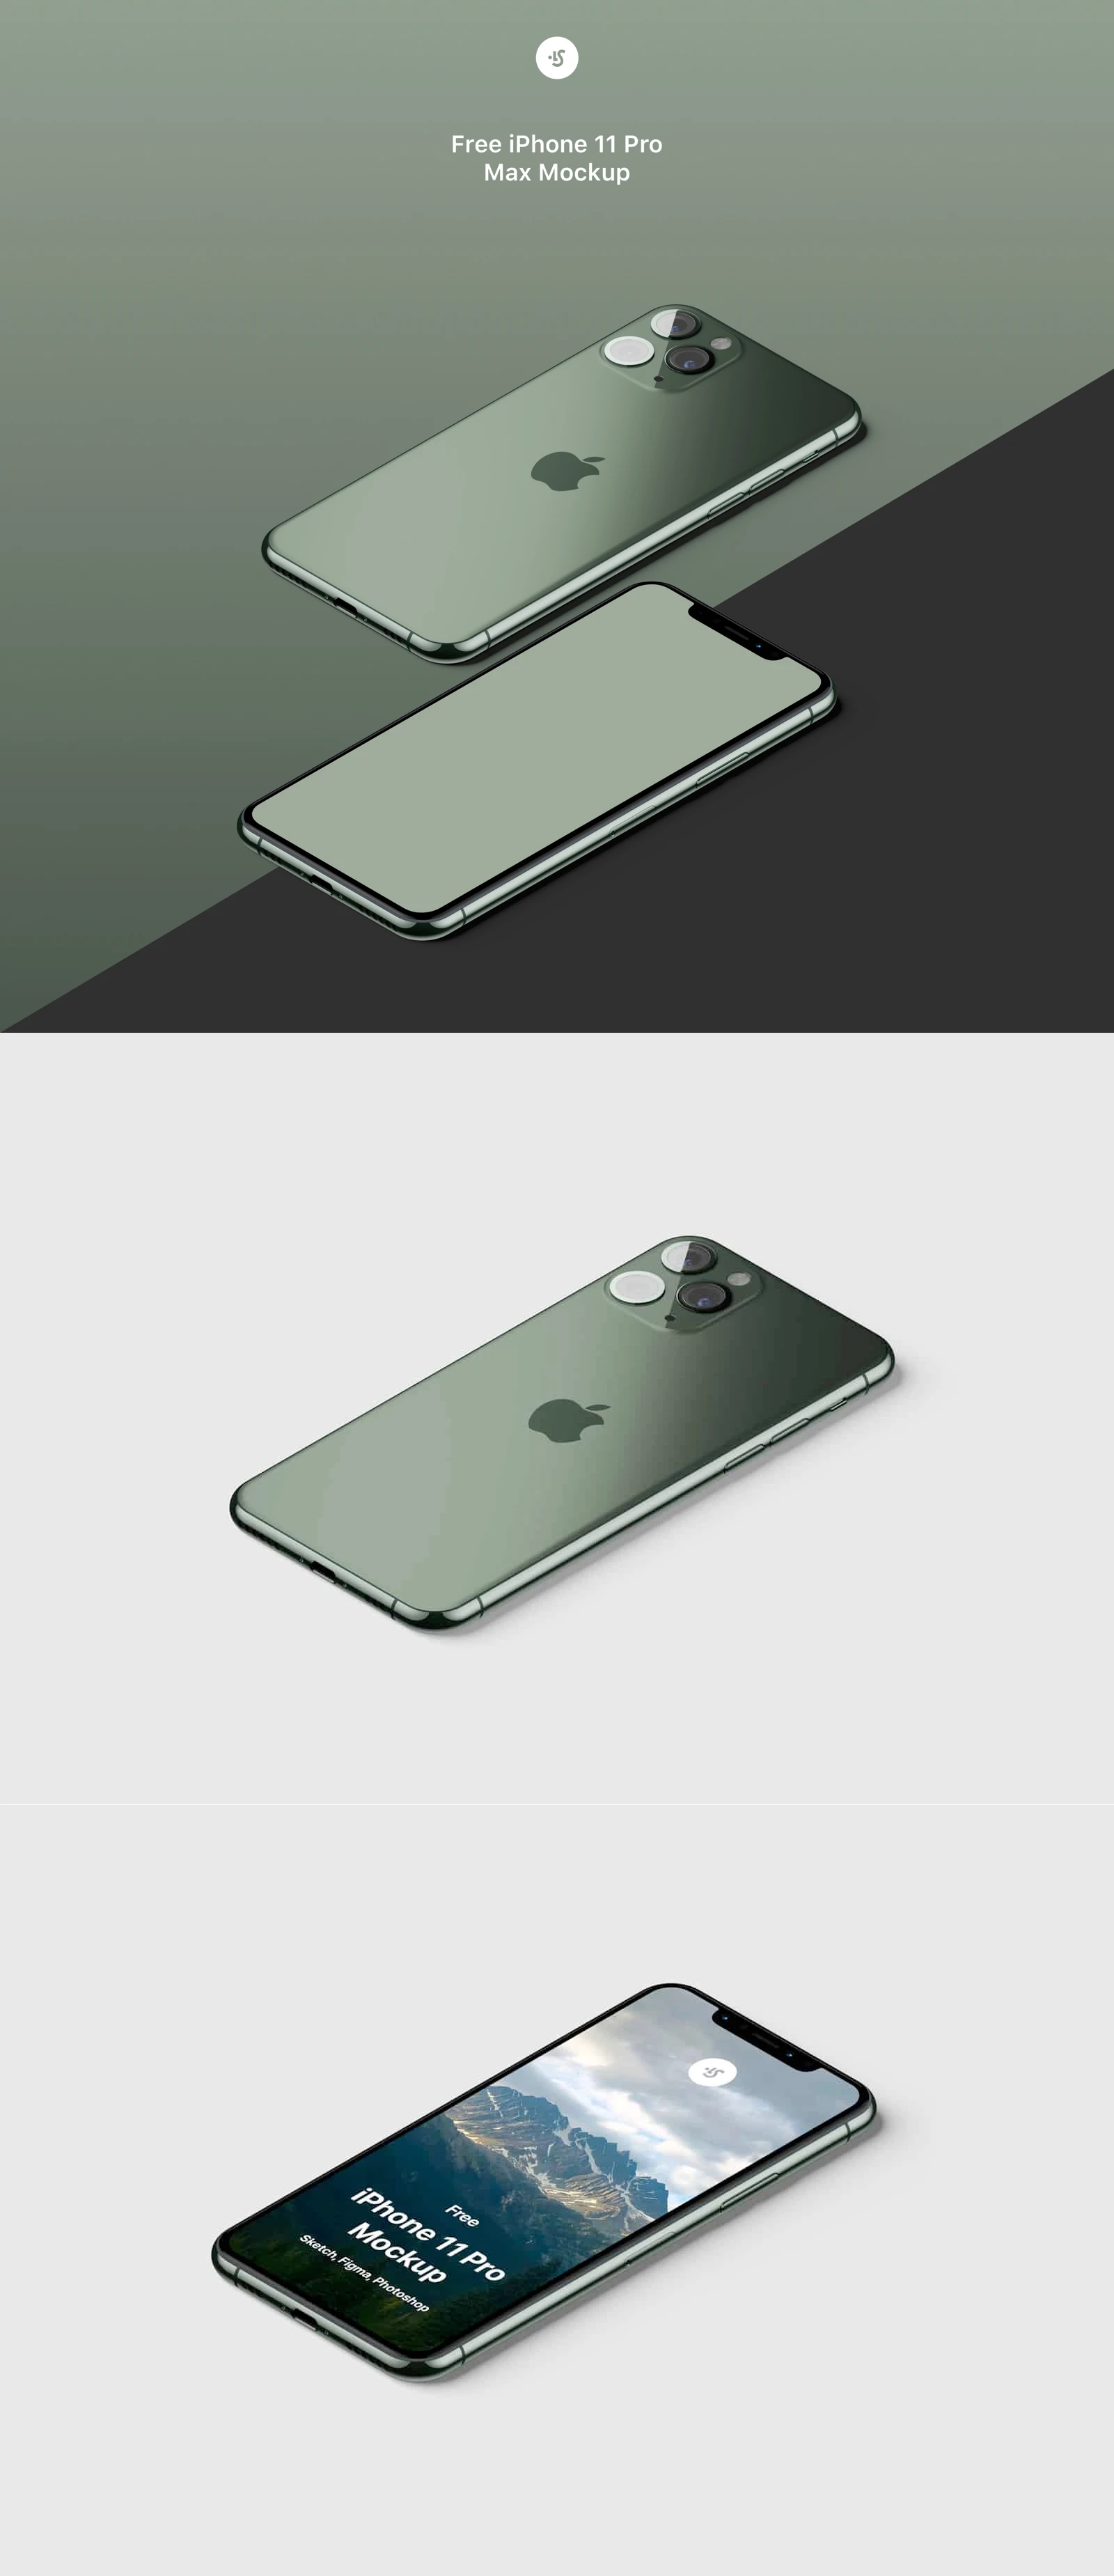 Free iPhone 11 Pro Isometric Mockup